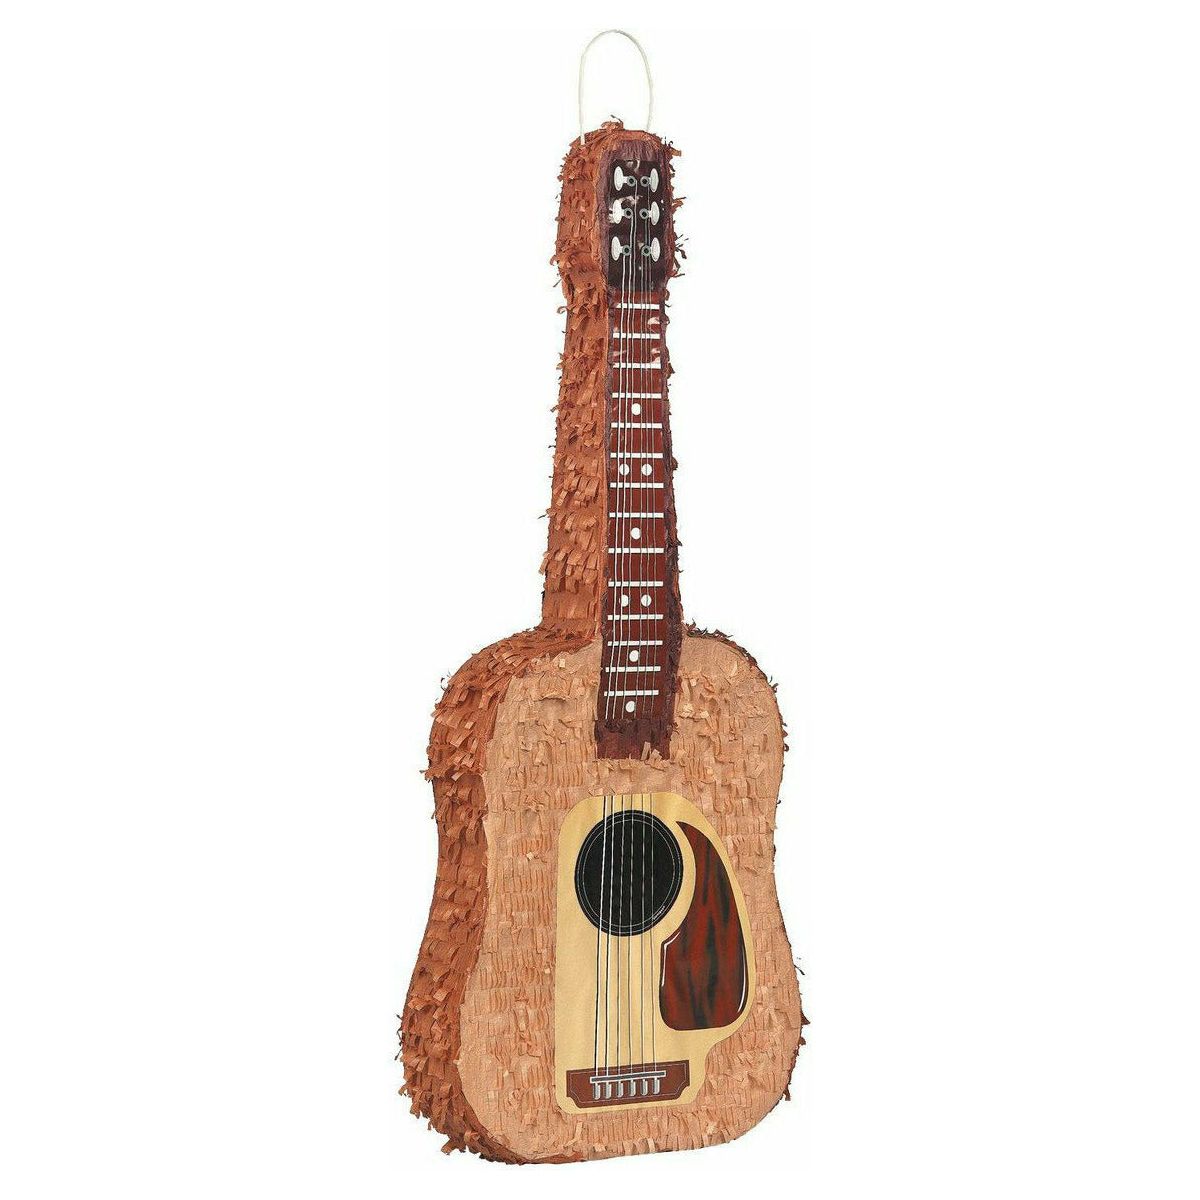 Pinata Guitar 75cm H x 28cm W x 8cm D - Dollars and Sense